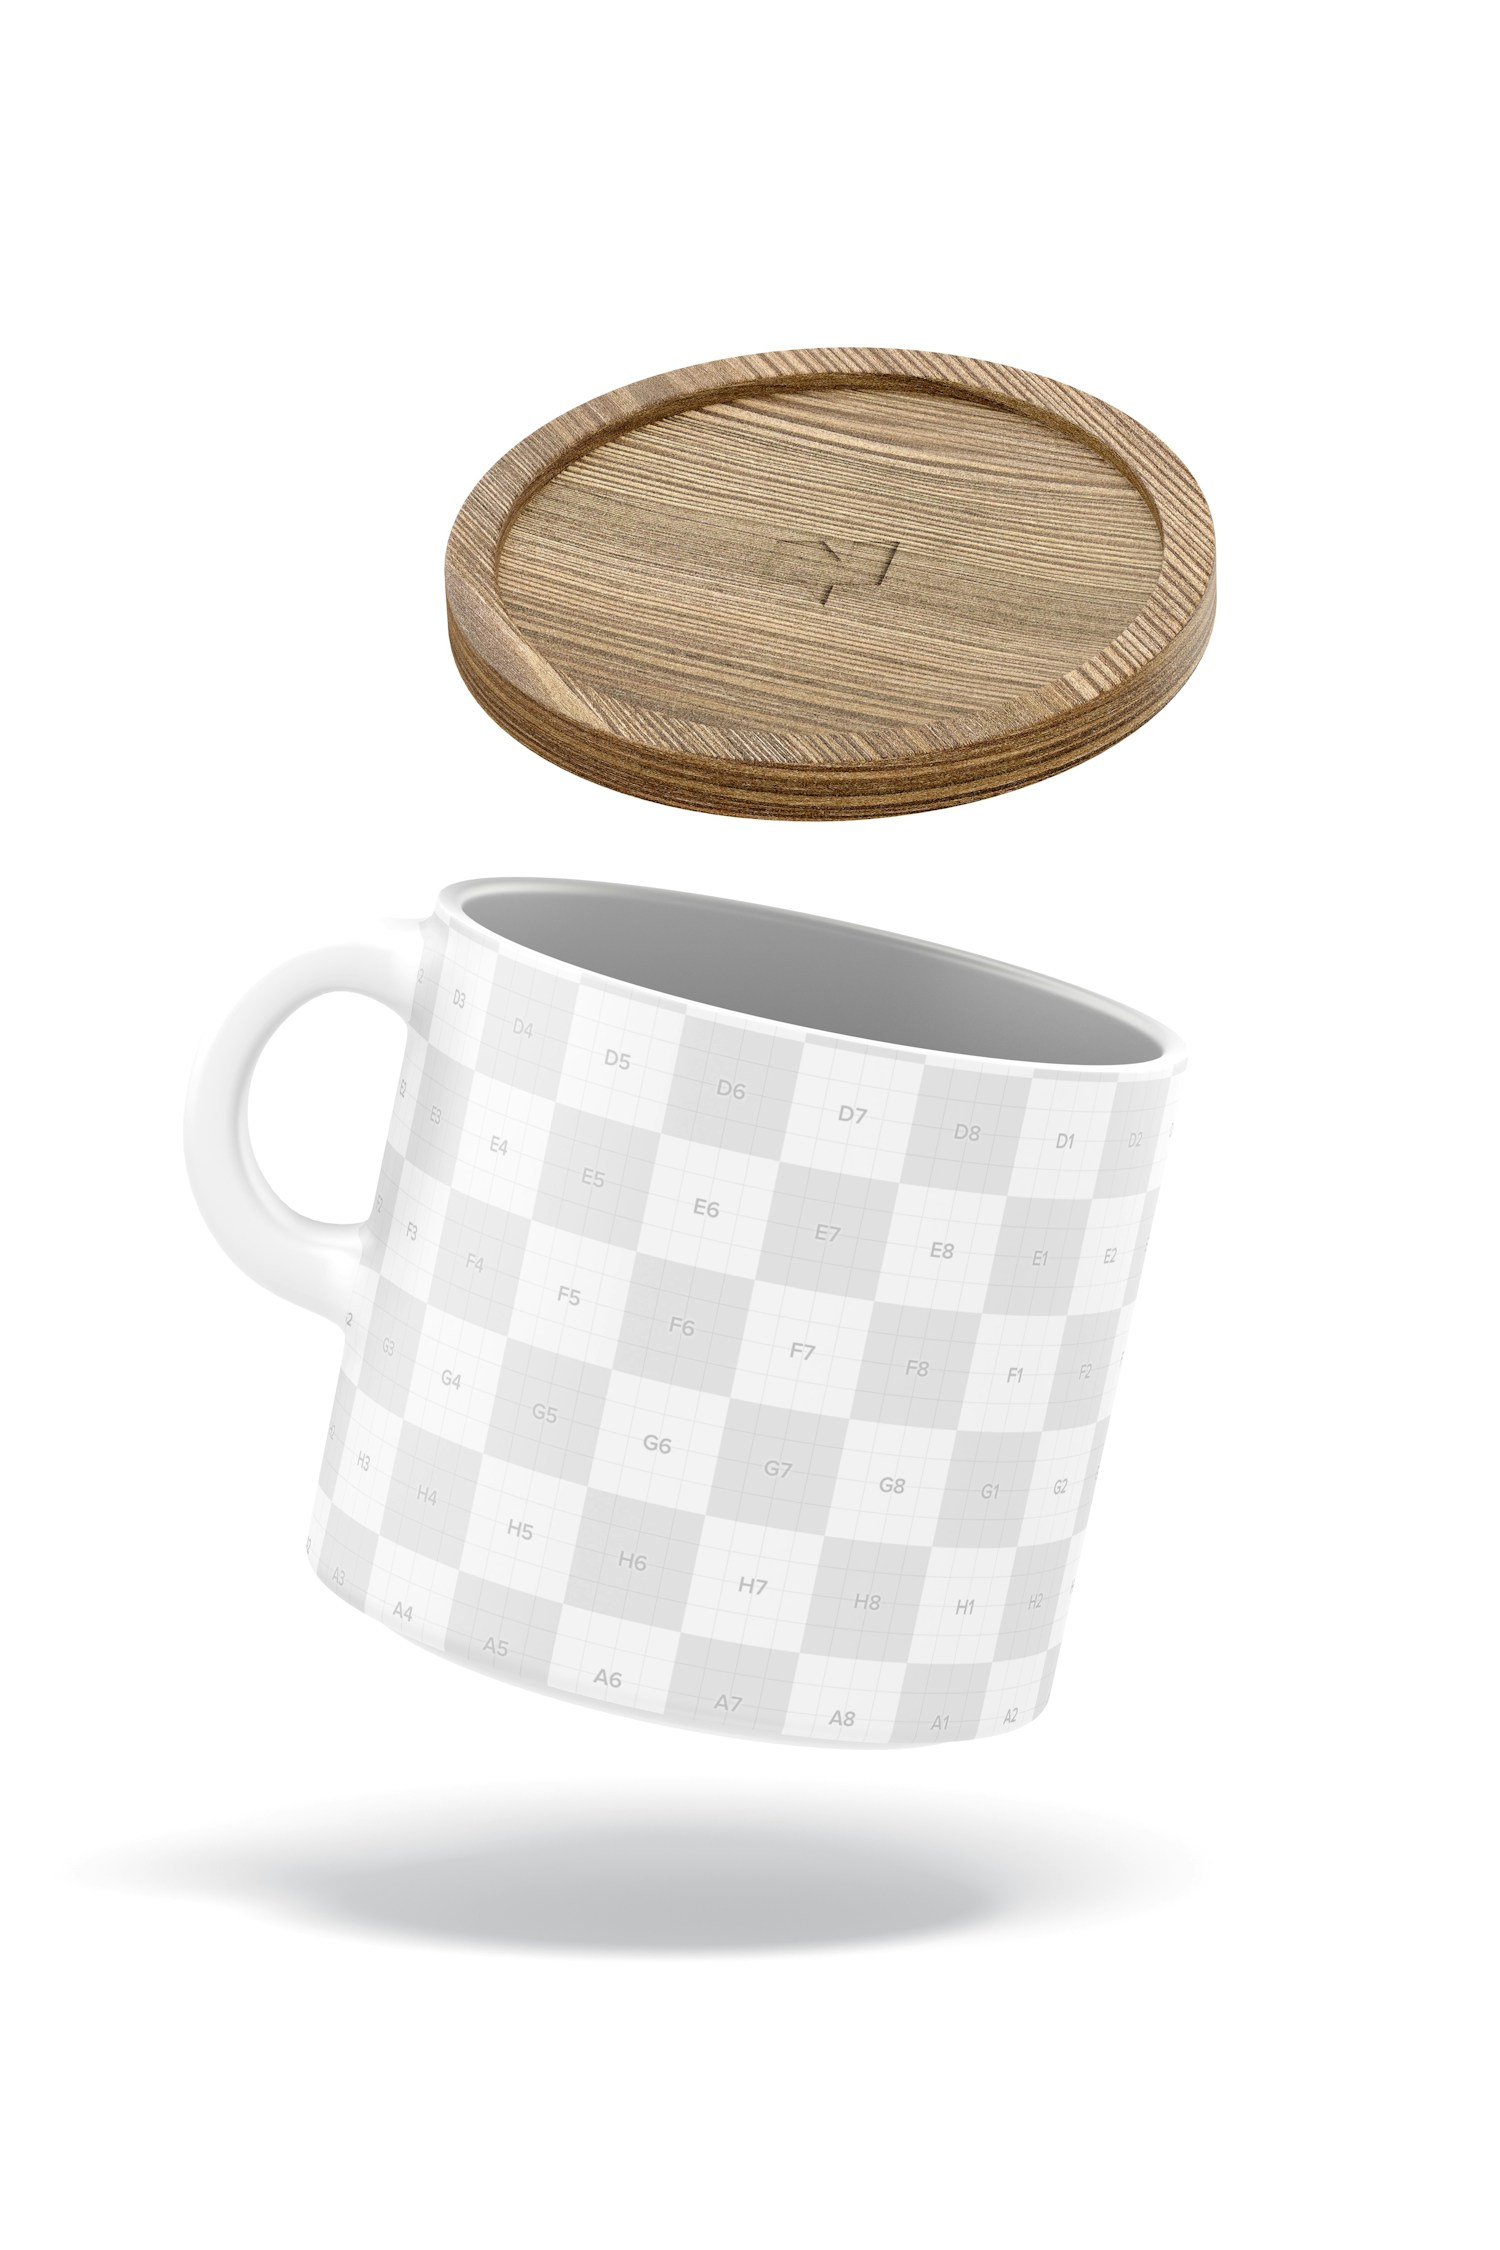 Maqueta de Mug de 10 oz con Tapa de Bambú, Flotando